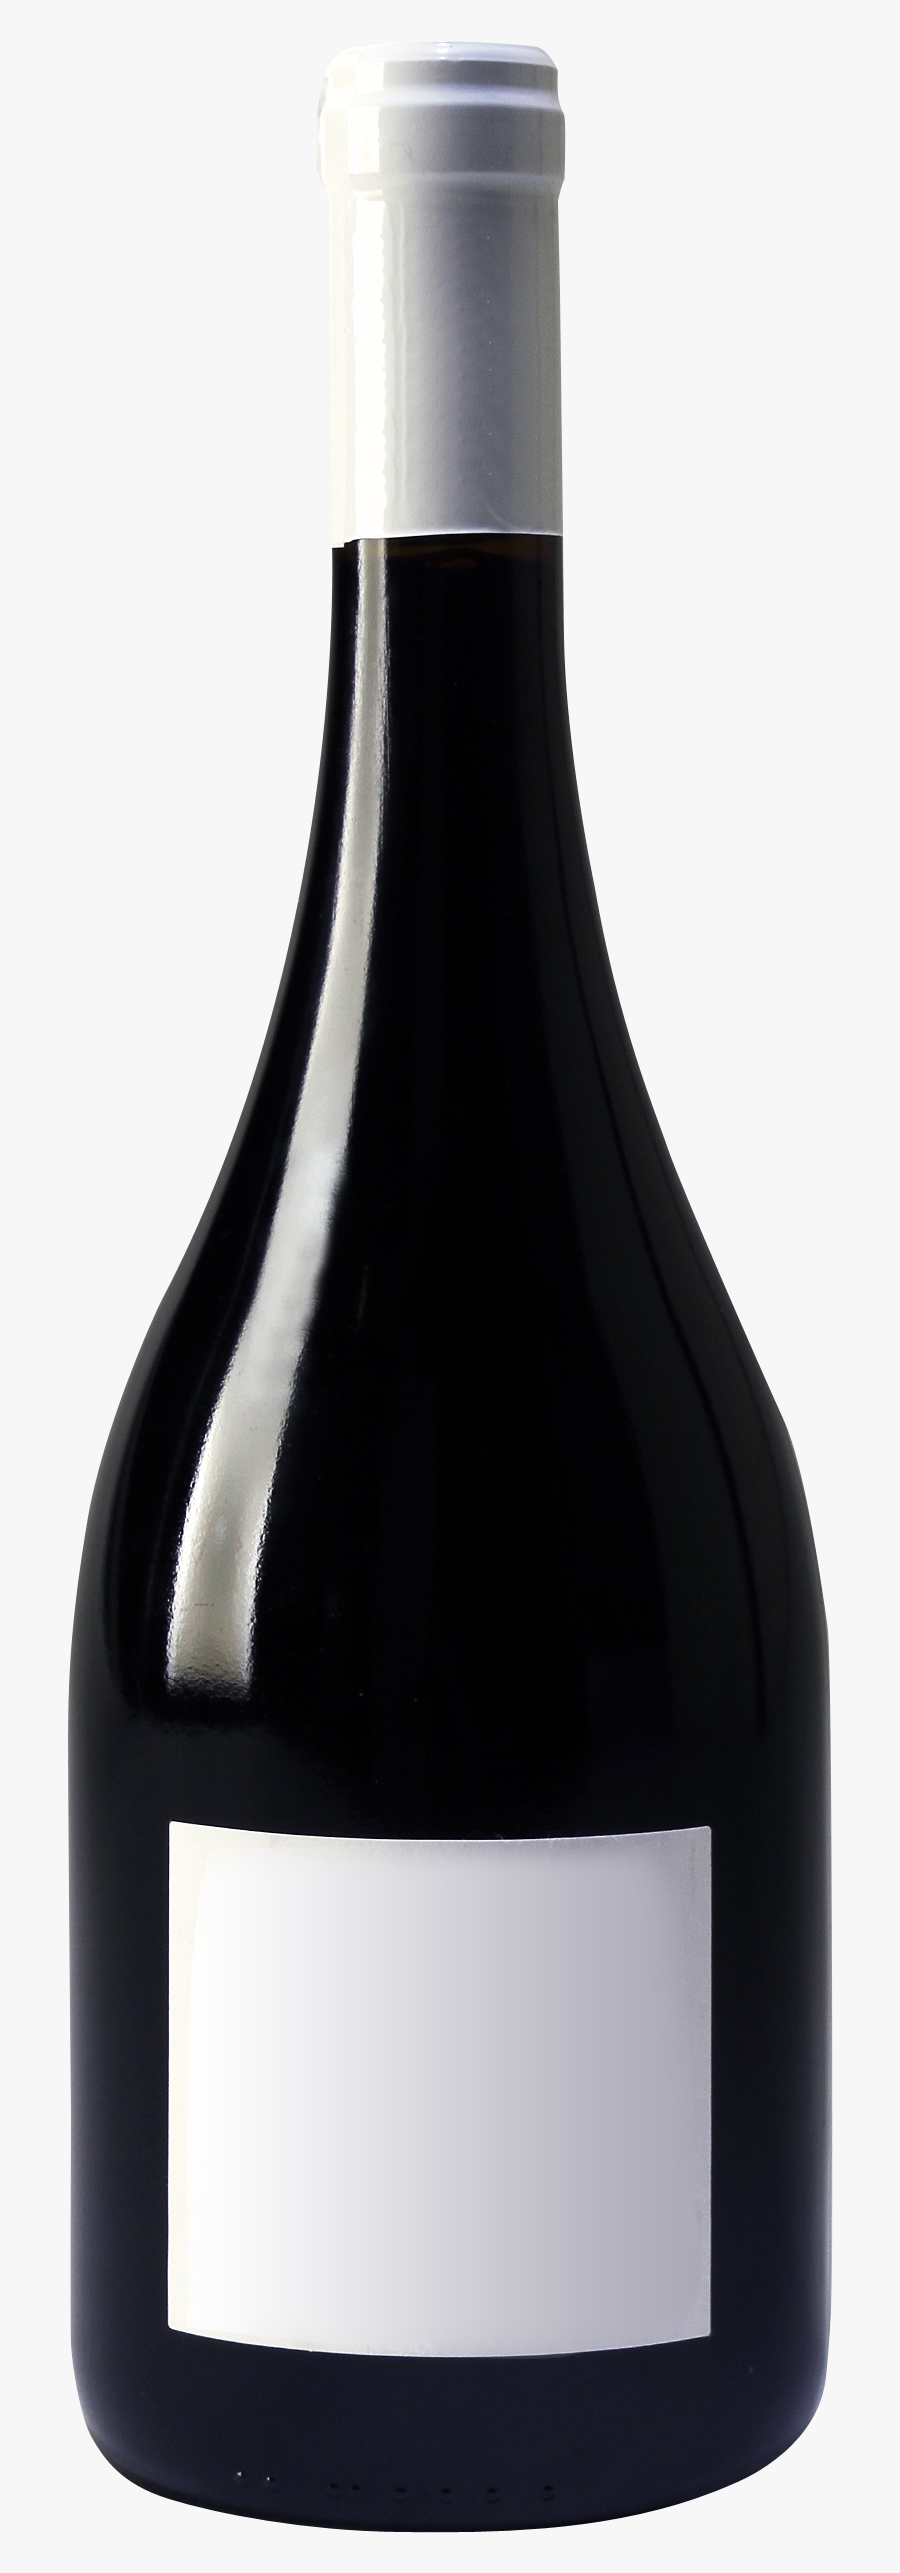 Bottle Clipart Booze Bottle - Black Wine Bottle Png, Transparent Clipart